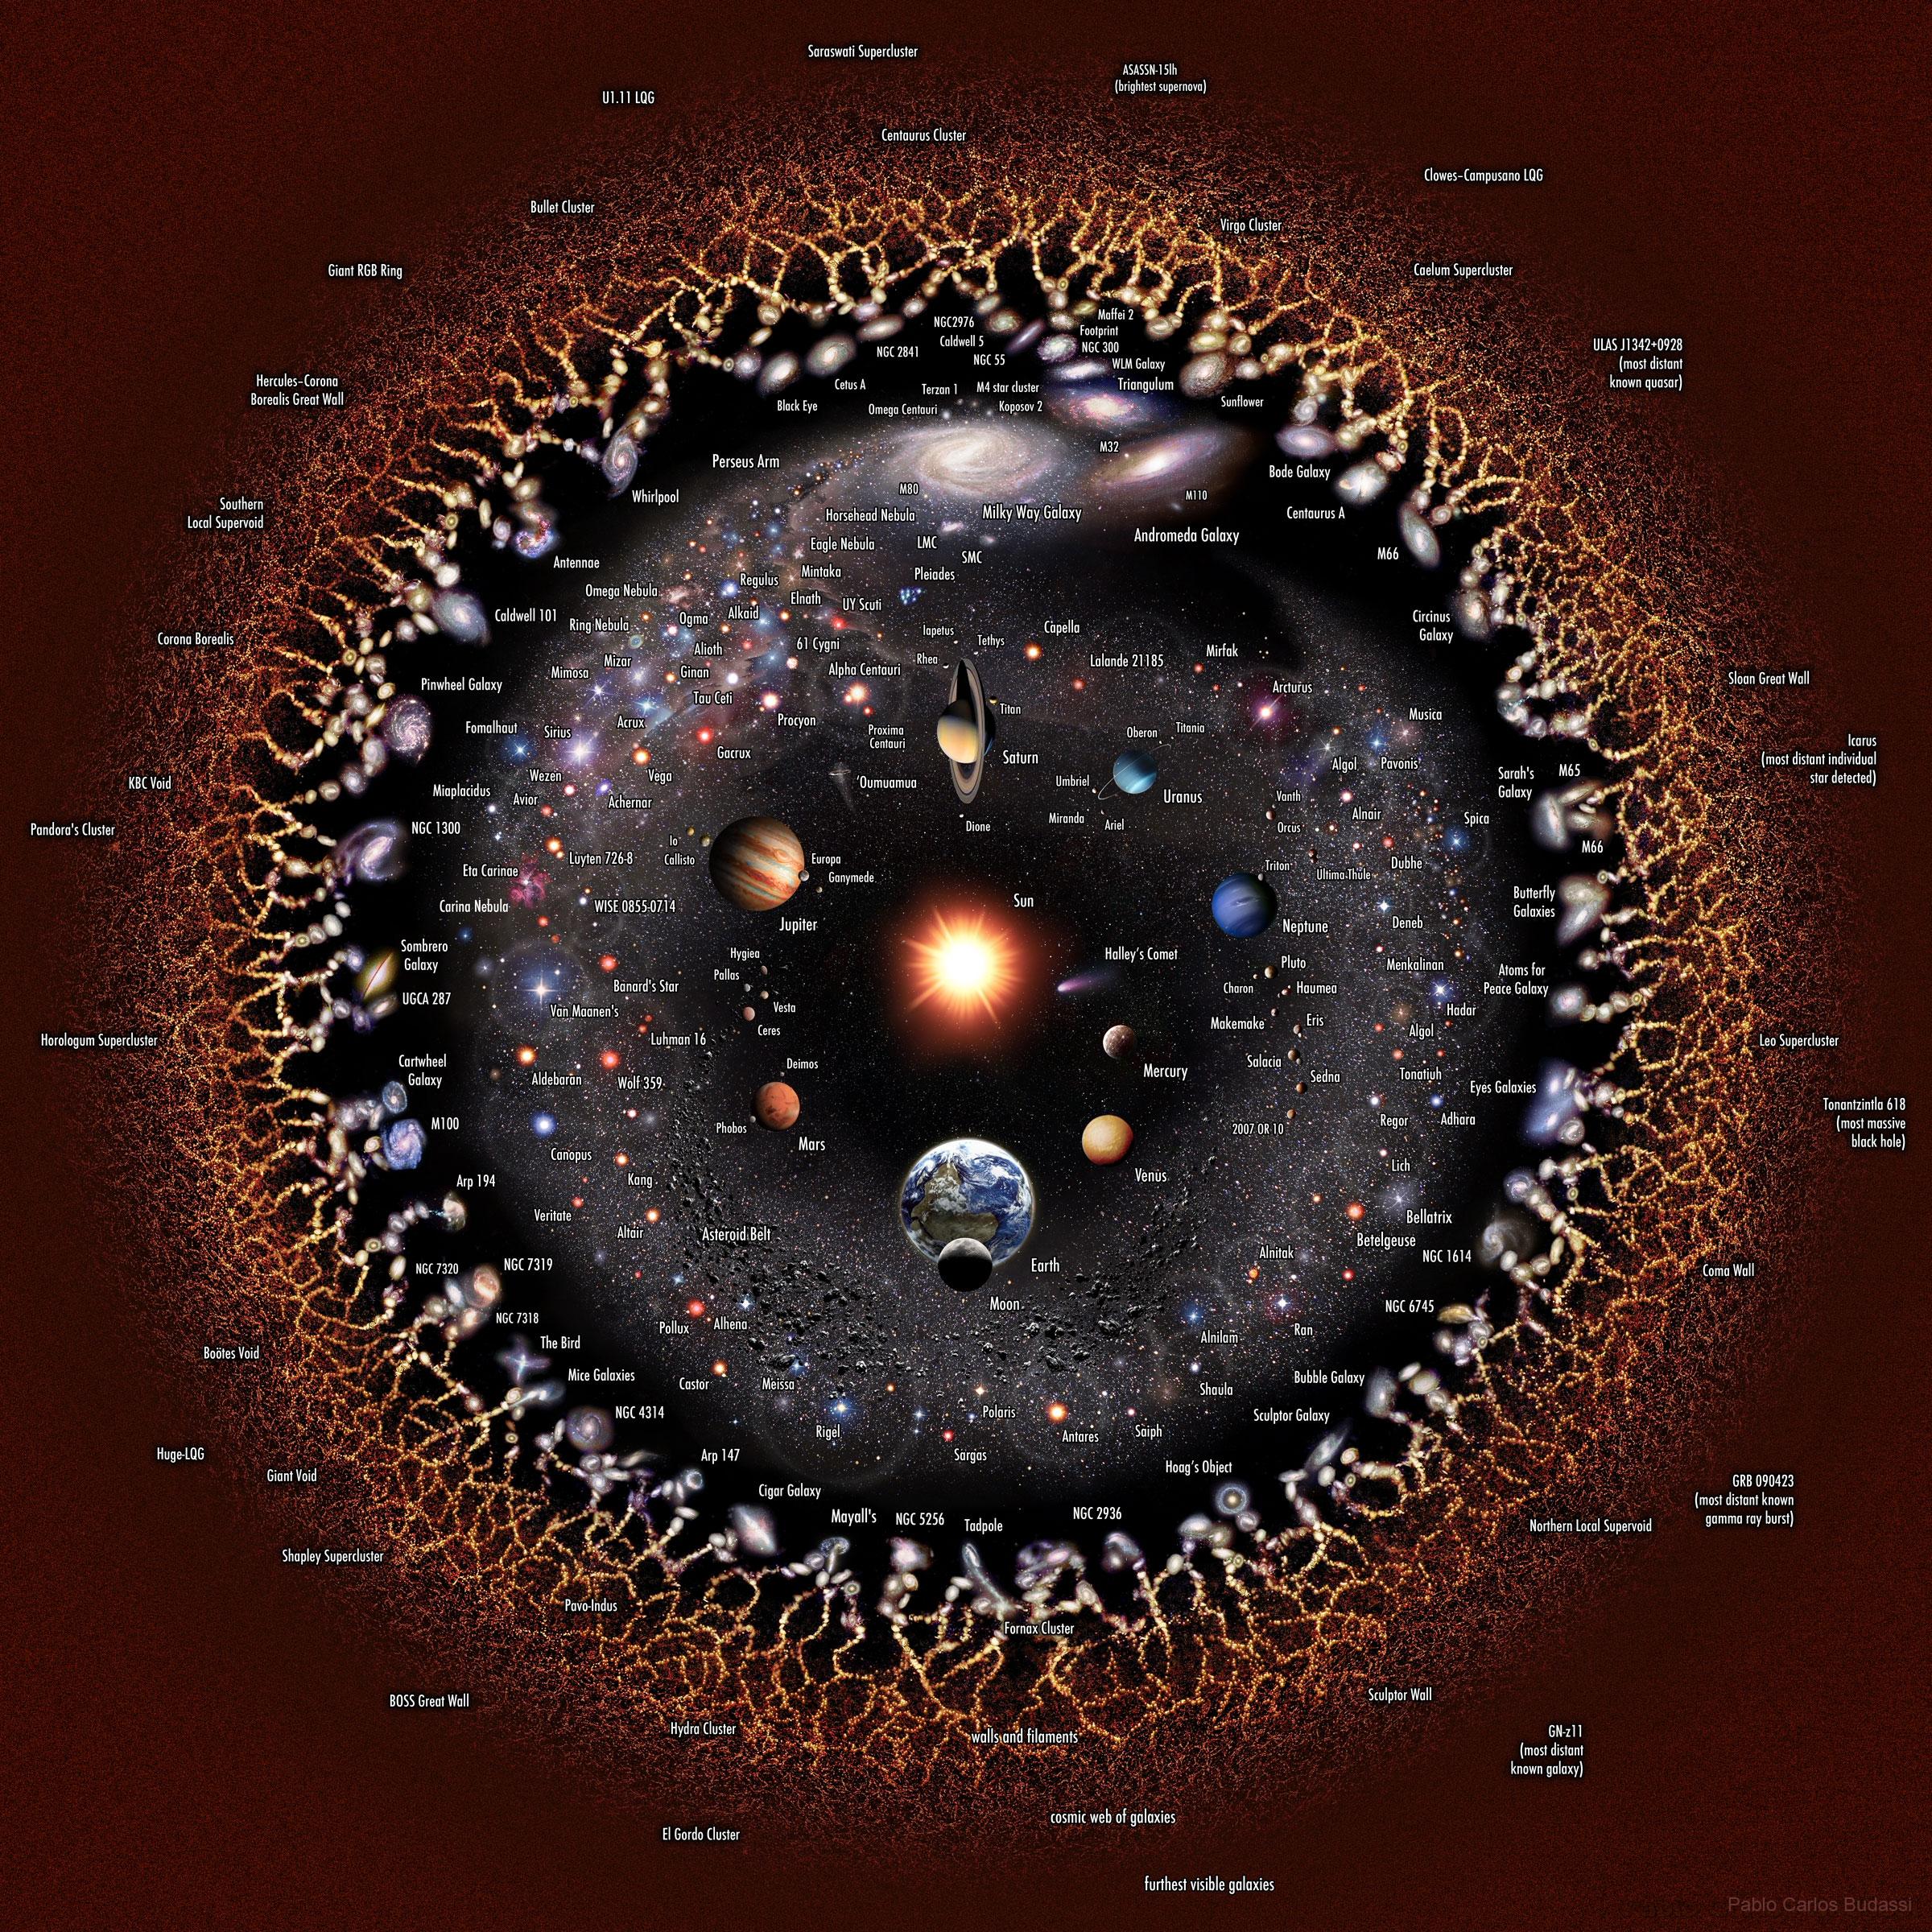 صورة توضيحية لوغاريتمية المقياس للكون القابل للرصد مع وجود الأرض والشمس في المركز محاطتين بمجموعتنا الشمسيّة، فالنجوم القريبة، المجرّات القريبة، المجرّات البعيدة، خيوط المادّة الأولى، وإشعاع الخلفيّة الكونيّة الميكرويّ.